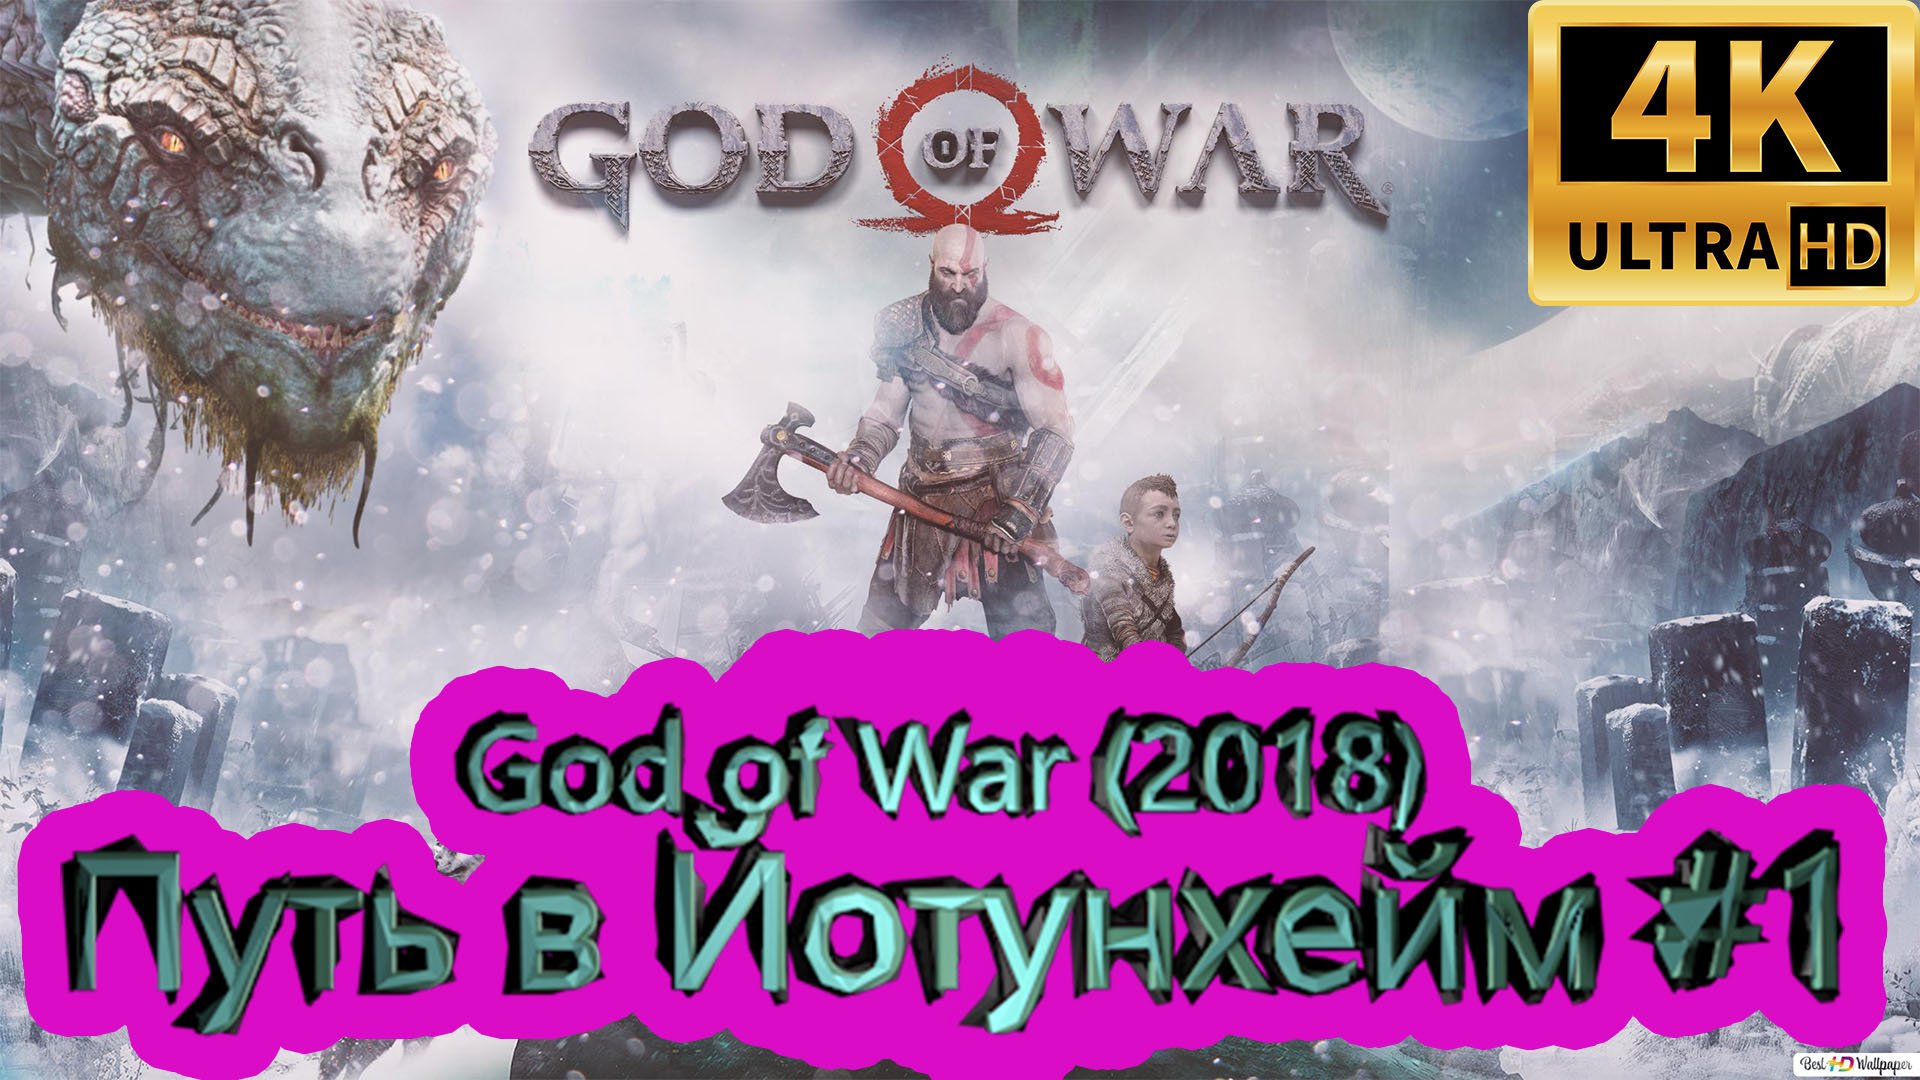 God of War прохождение (2018) [4K]  ► Путь в Йотунхейм #1 ► ГОД ОФ ВАР ► #46 /RTX 3080 Ti